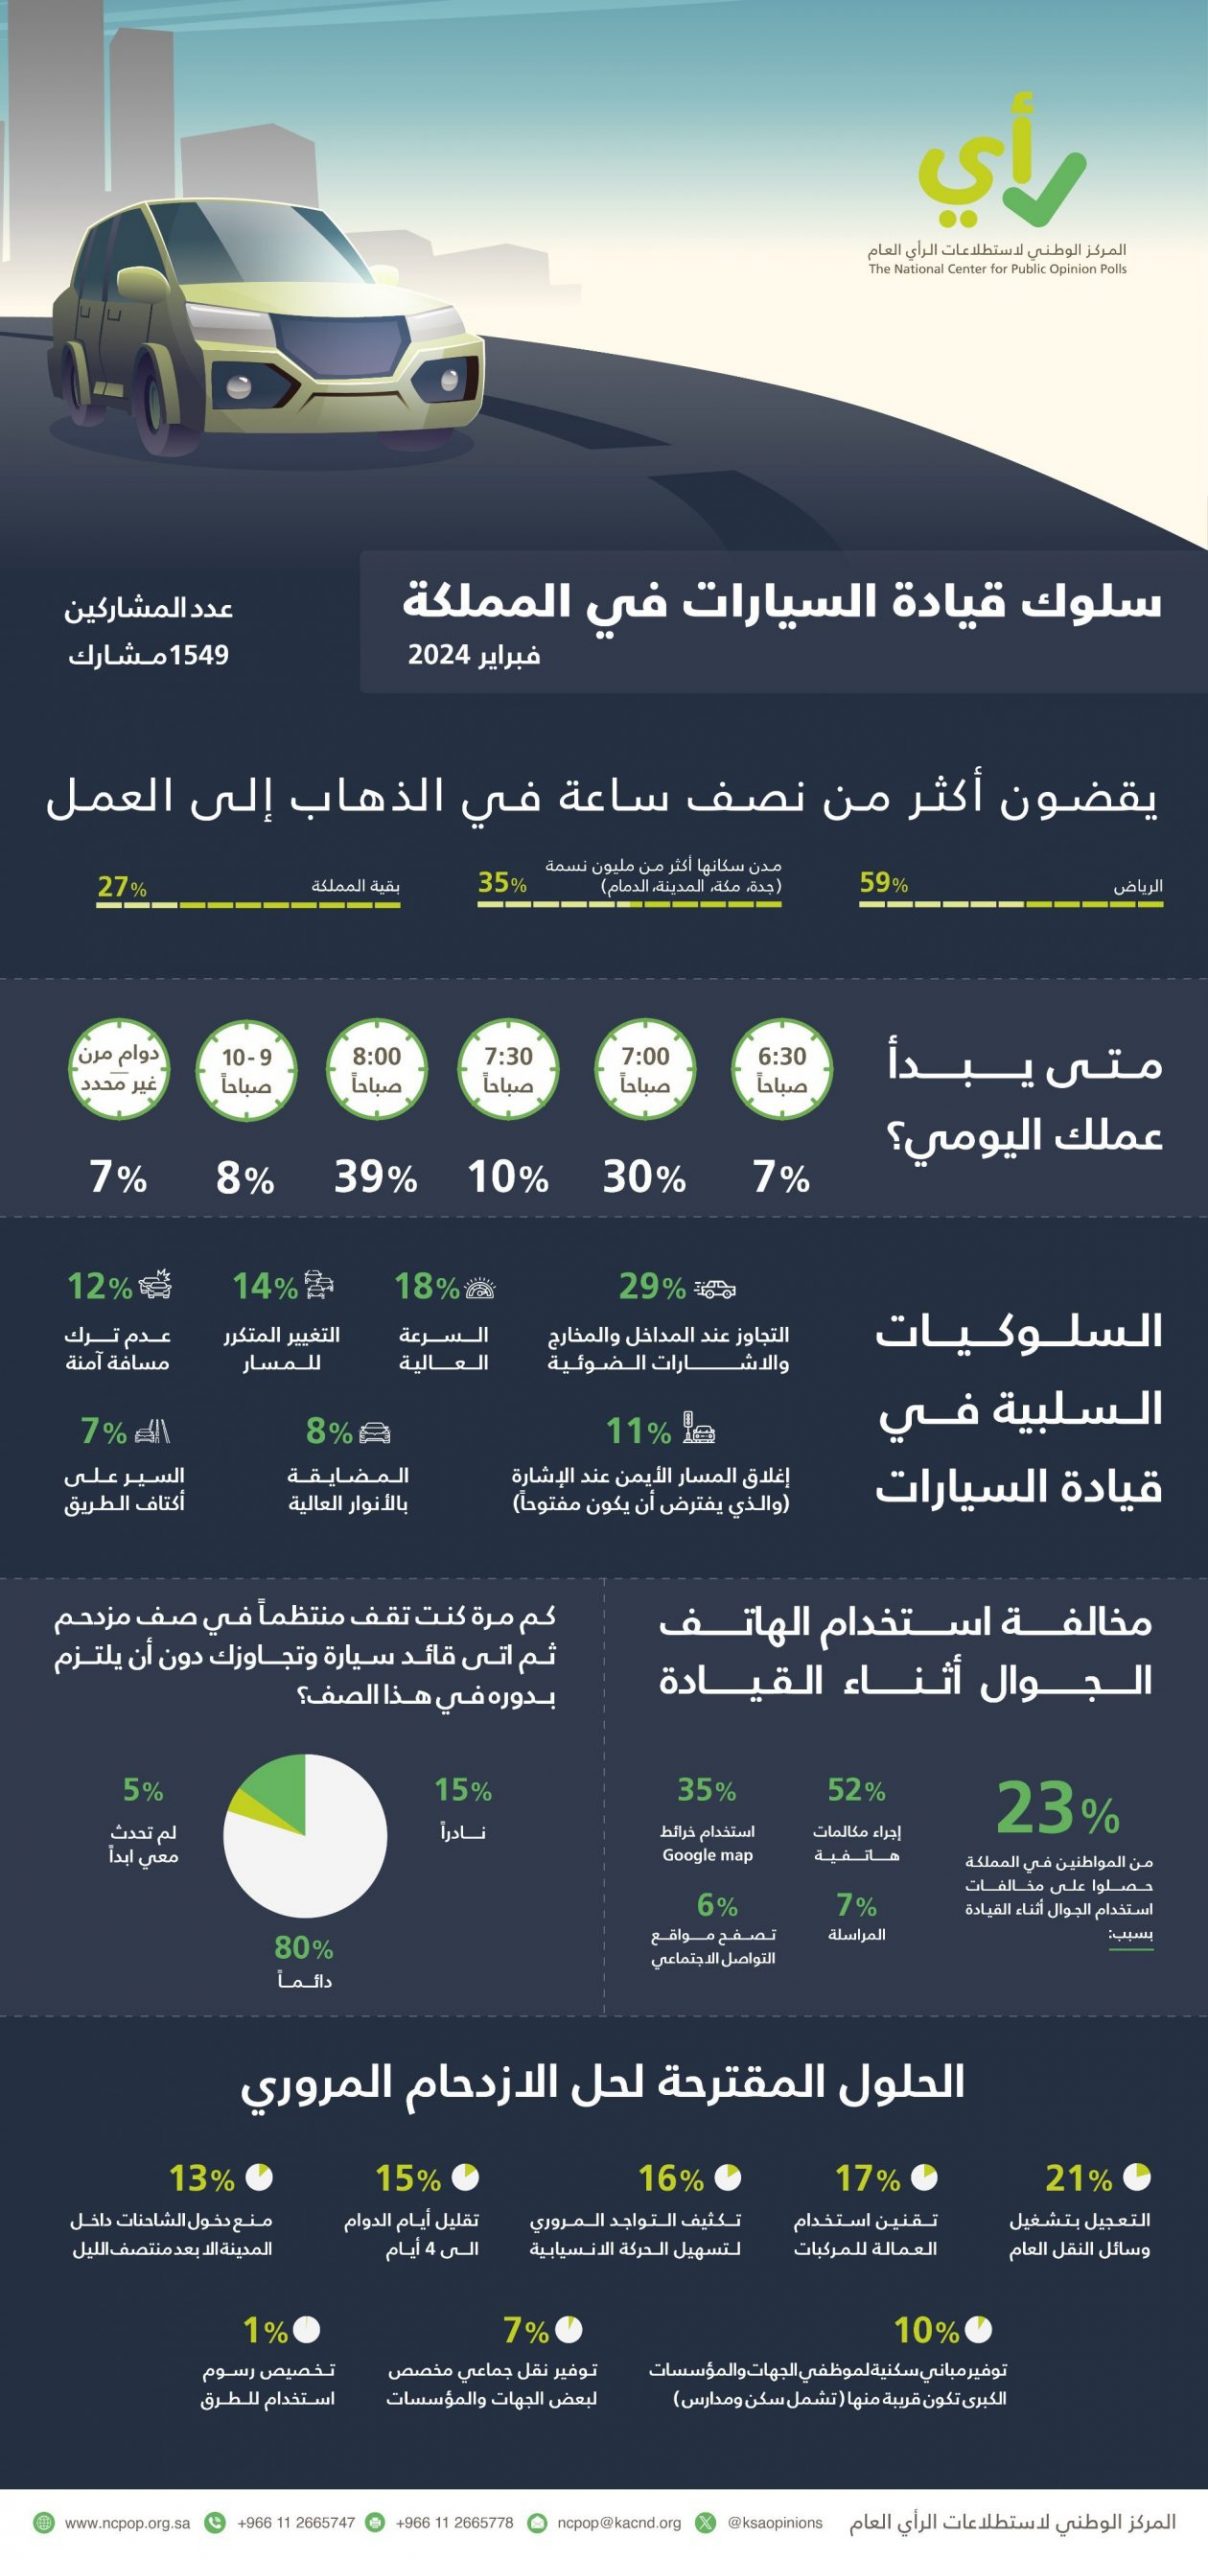 "استطلاع": 59% من سكان الرياض يستغرقون أكثر من نصف ساعة للانتقال لأعمالهم 2